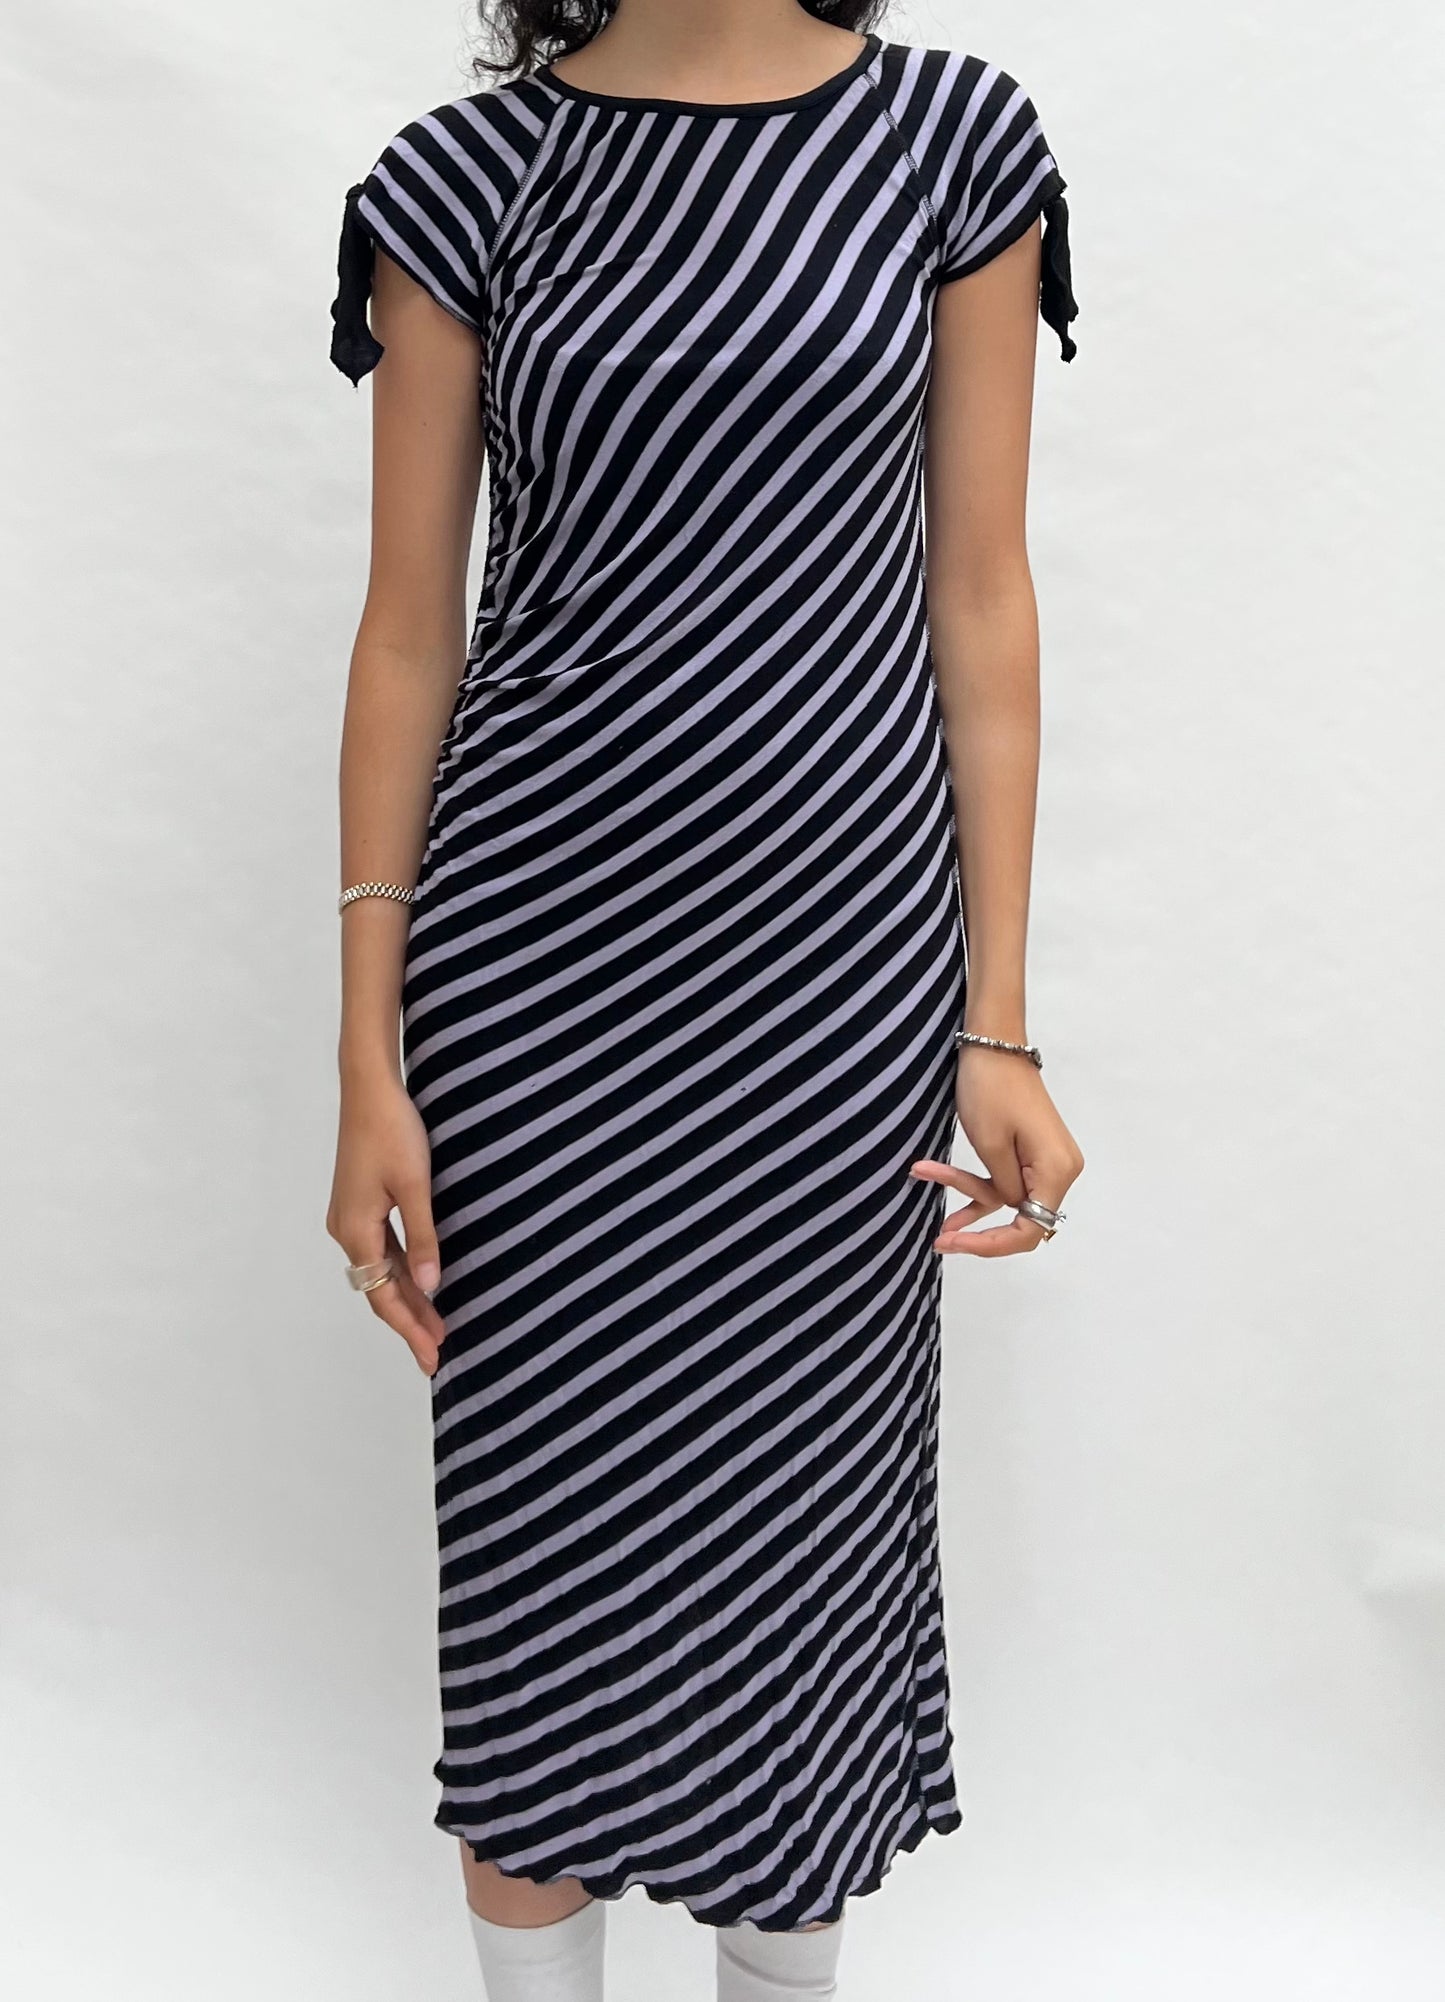 Sonia Rykiel striped cotton dress